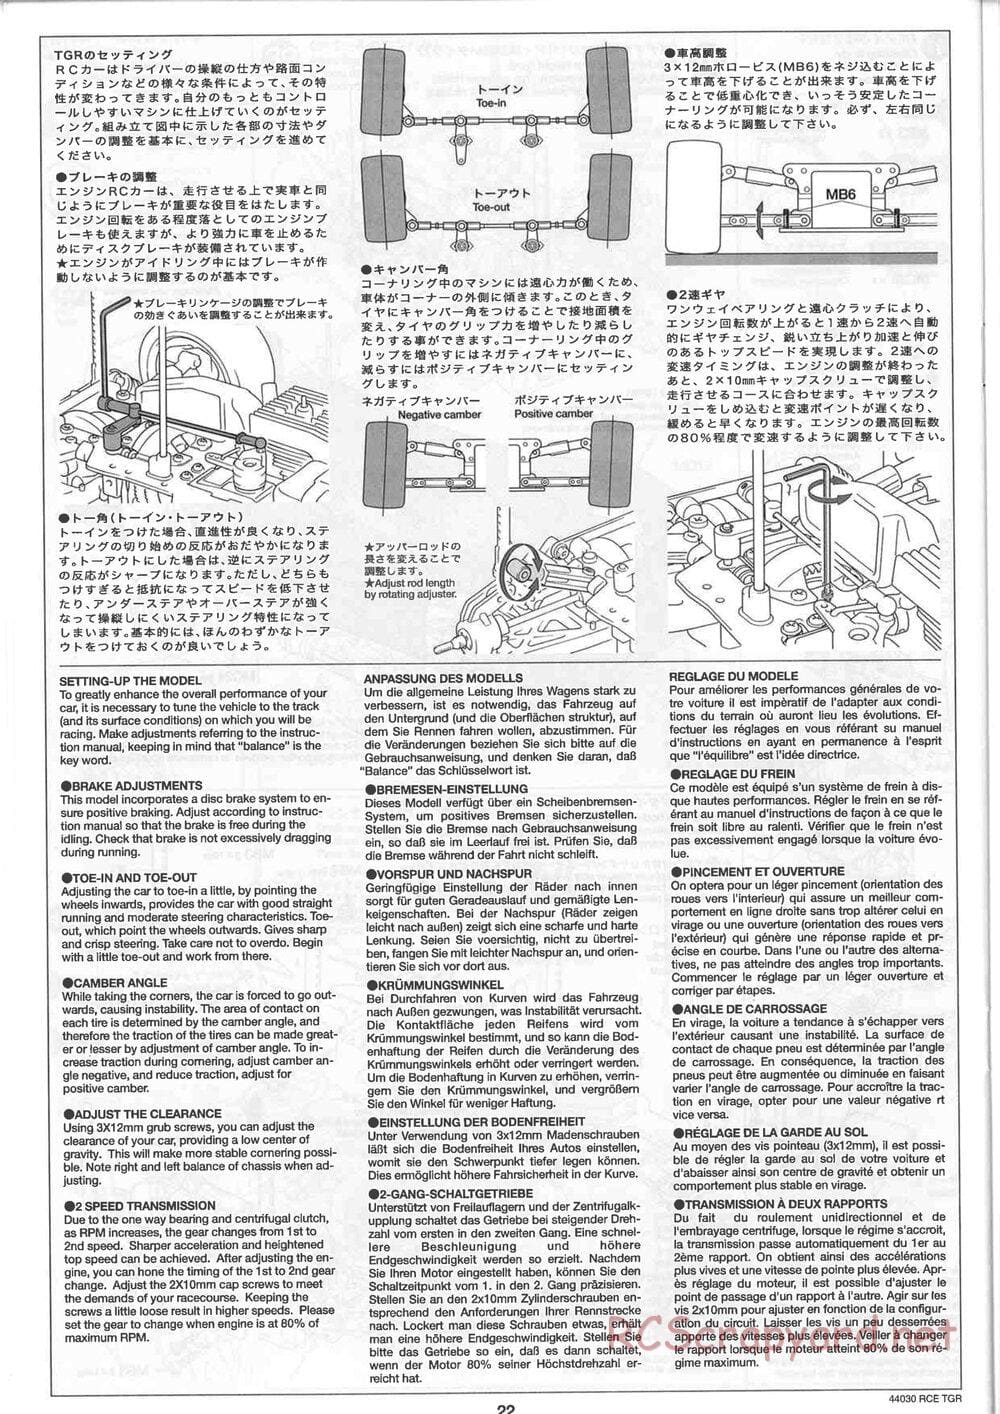 Tamiya - TGR Chassis - Manual - Page 22